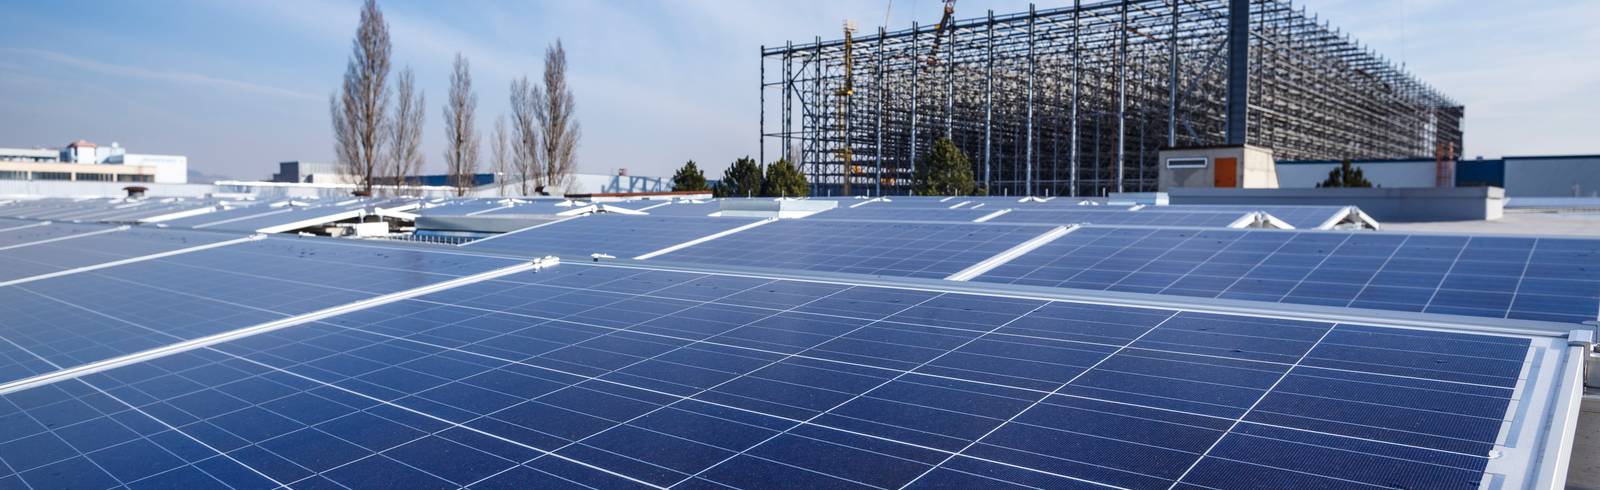 Wien Energie startet Solarstrom-Offensive